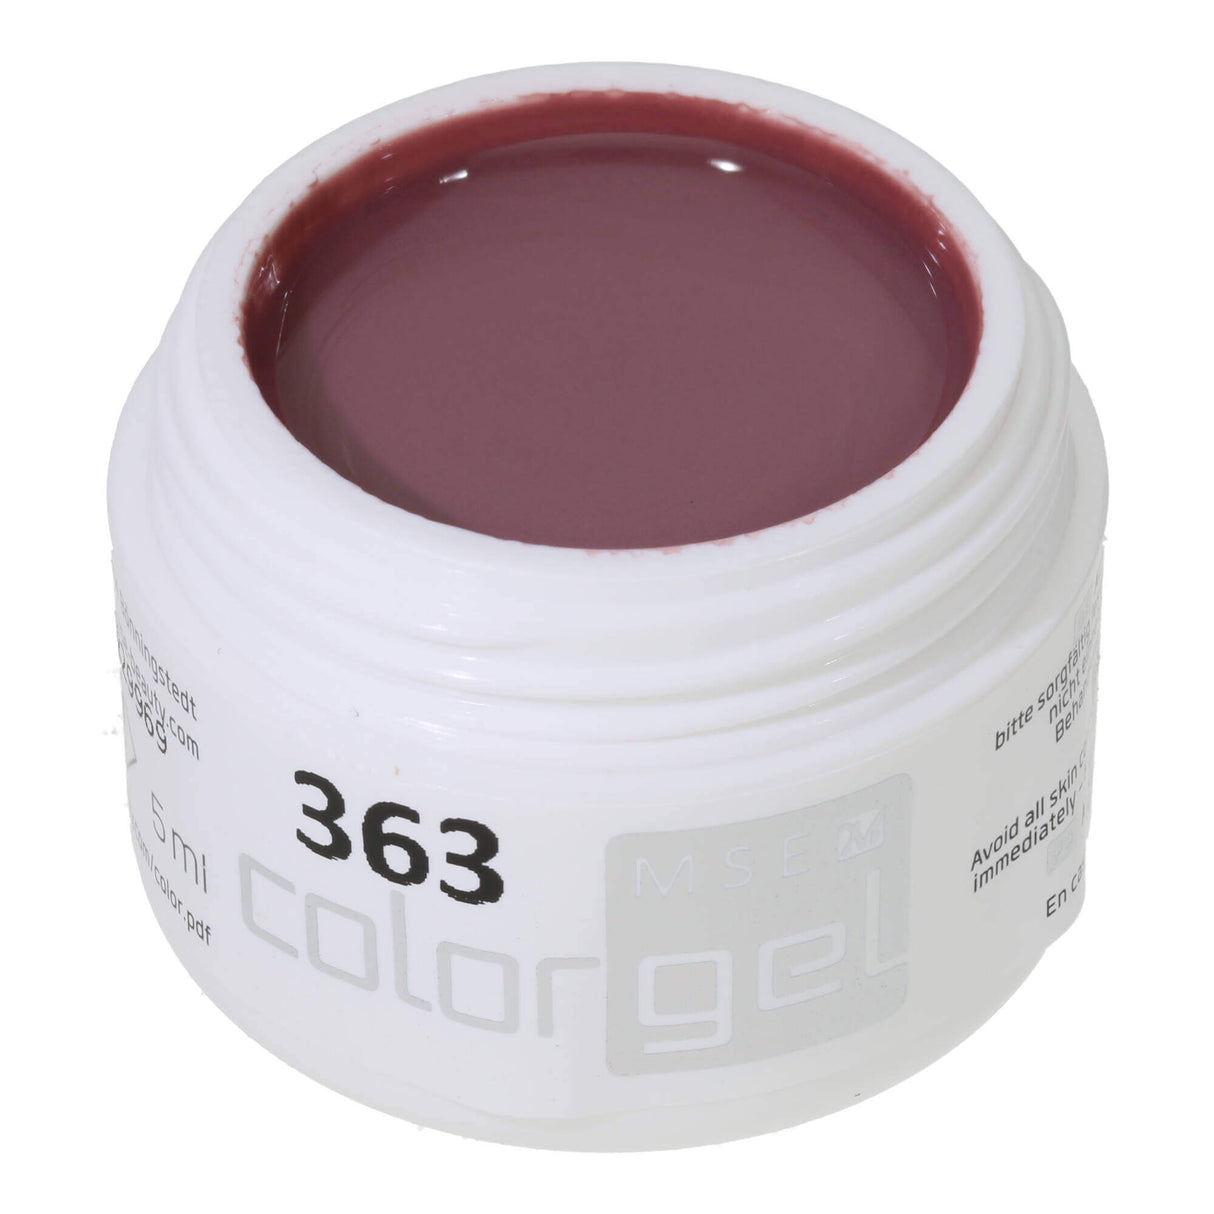 # 363 Premium-PURE Color Gel 5ml rose-marron